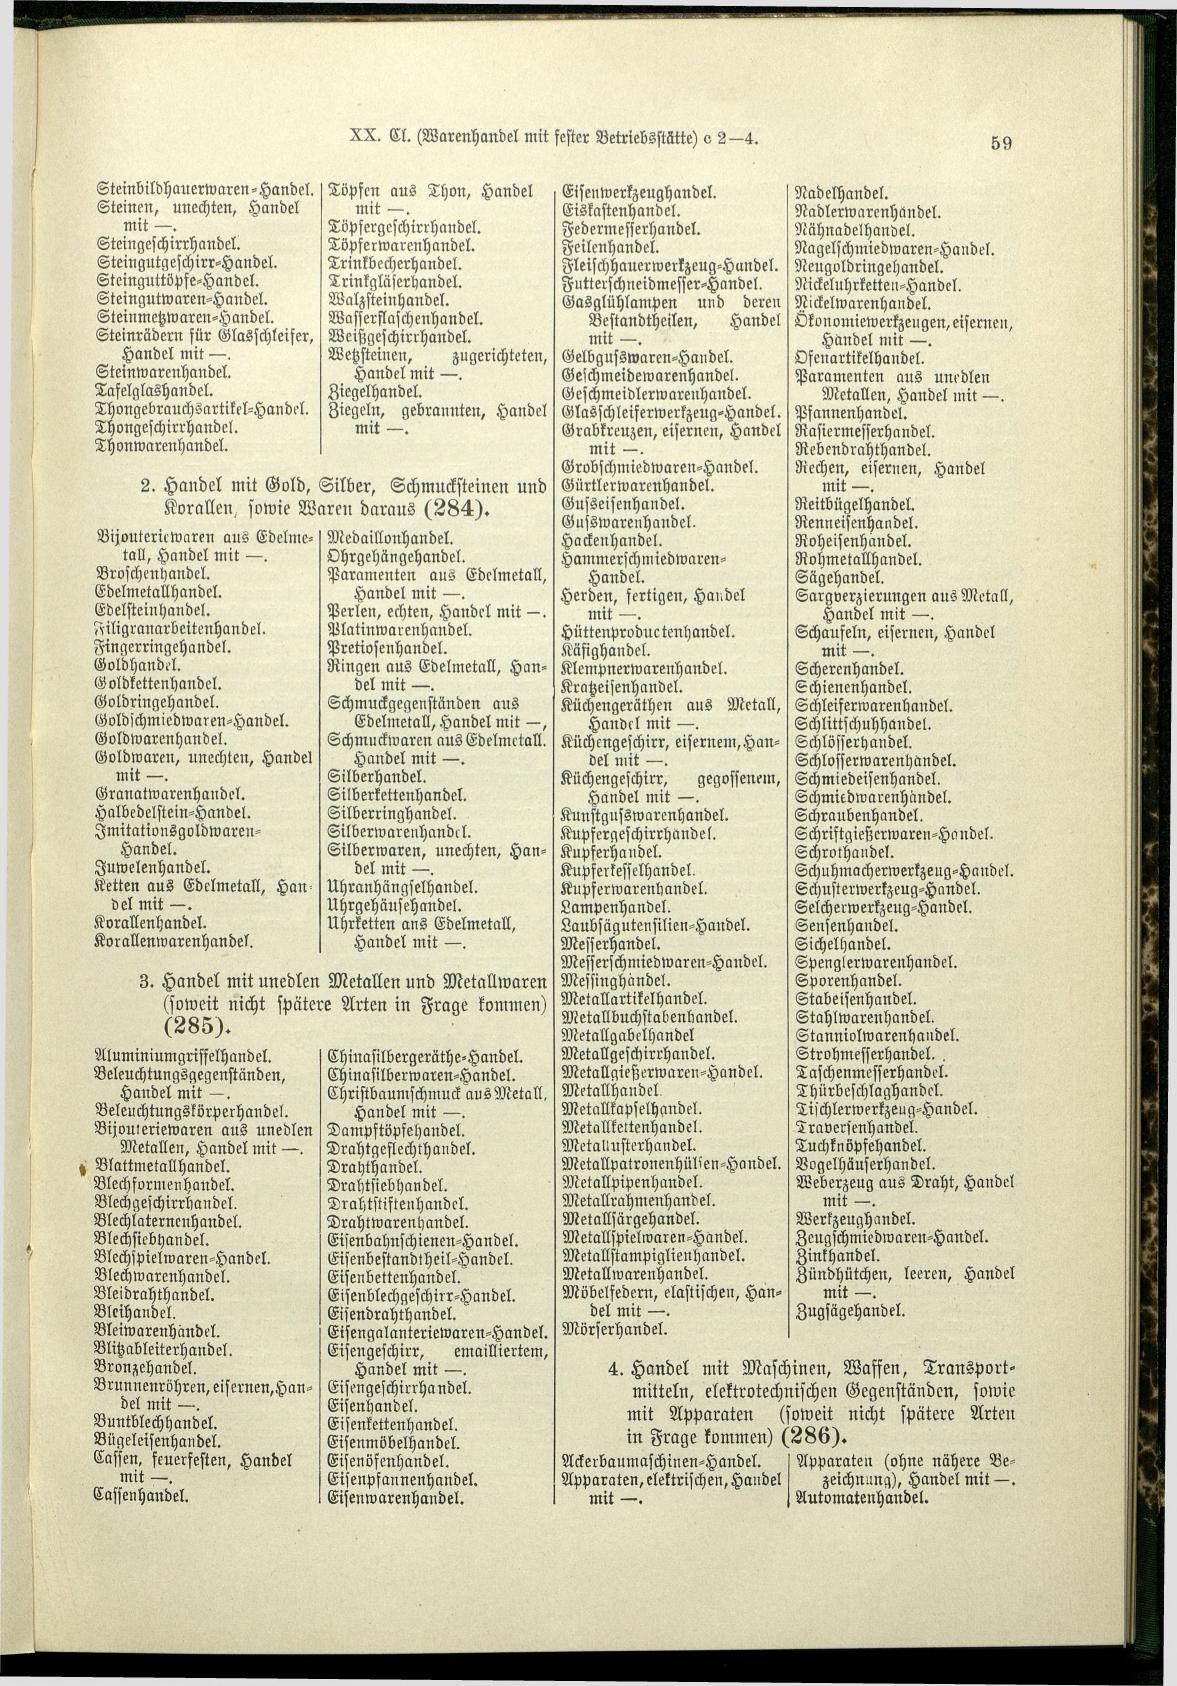 Verzeichnis der Gewerbe der im Reichsrathe vertretenen Königreiche und Länder 1900 - Seite 63